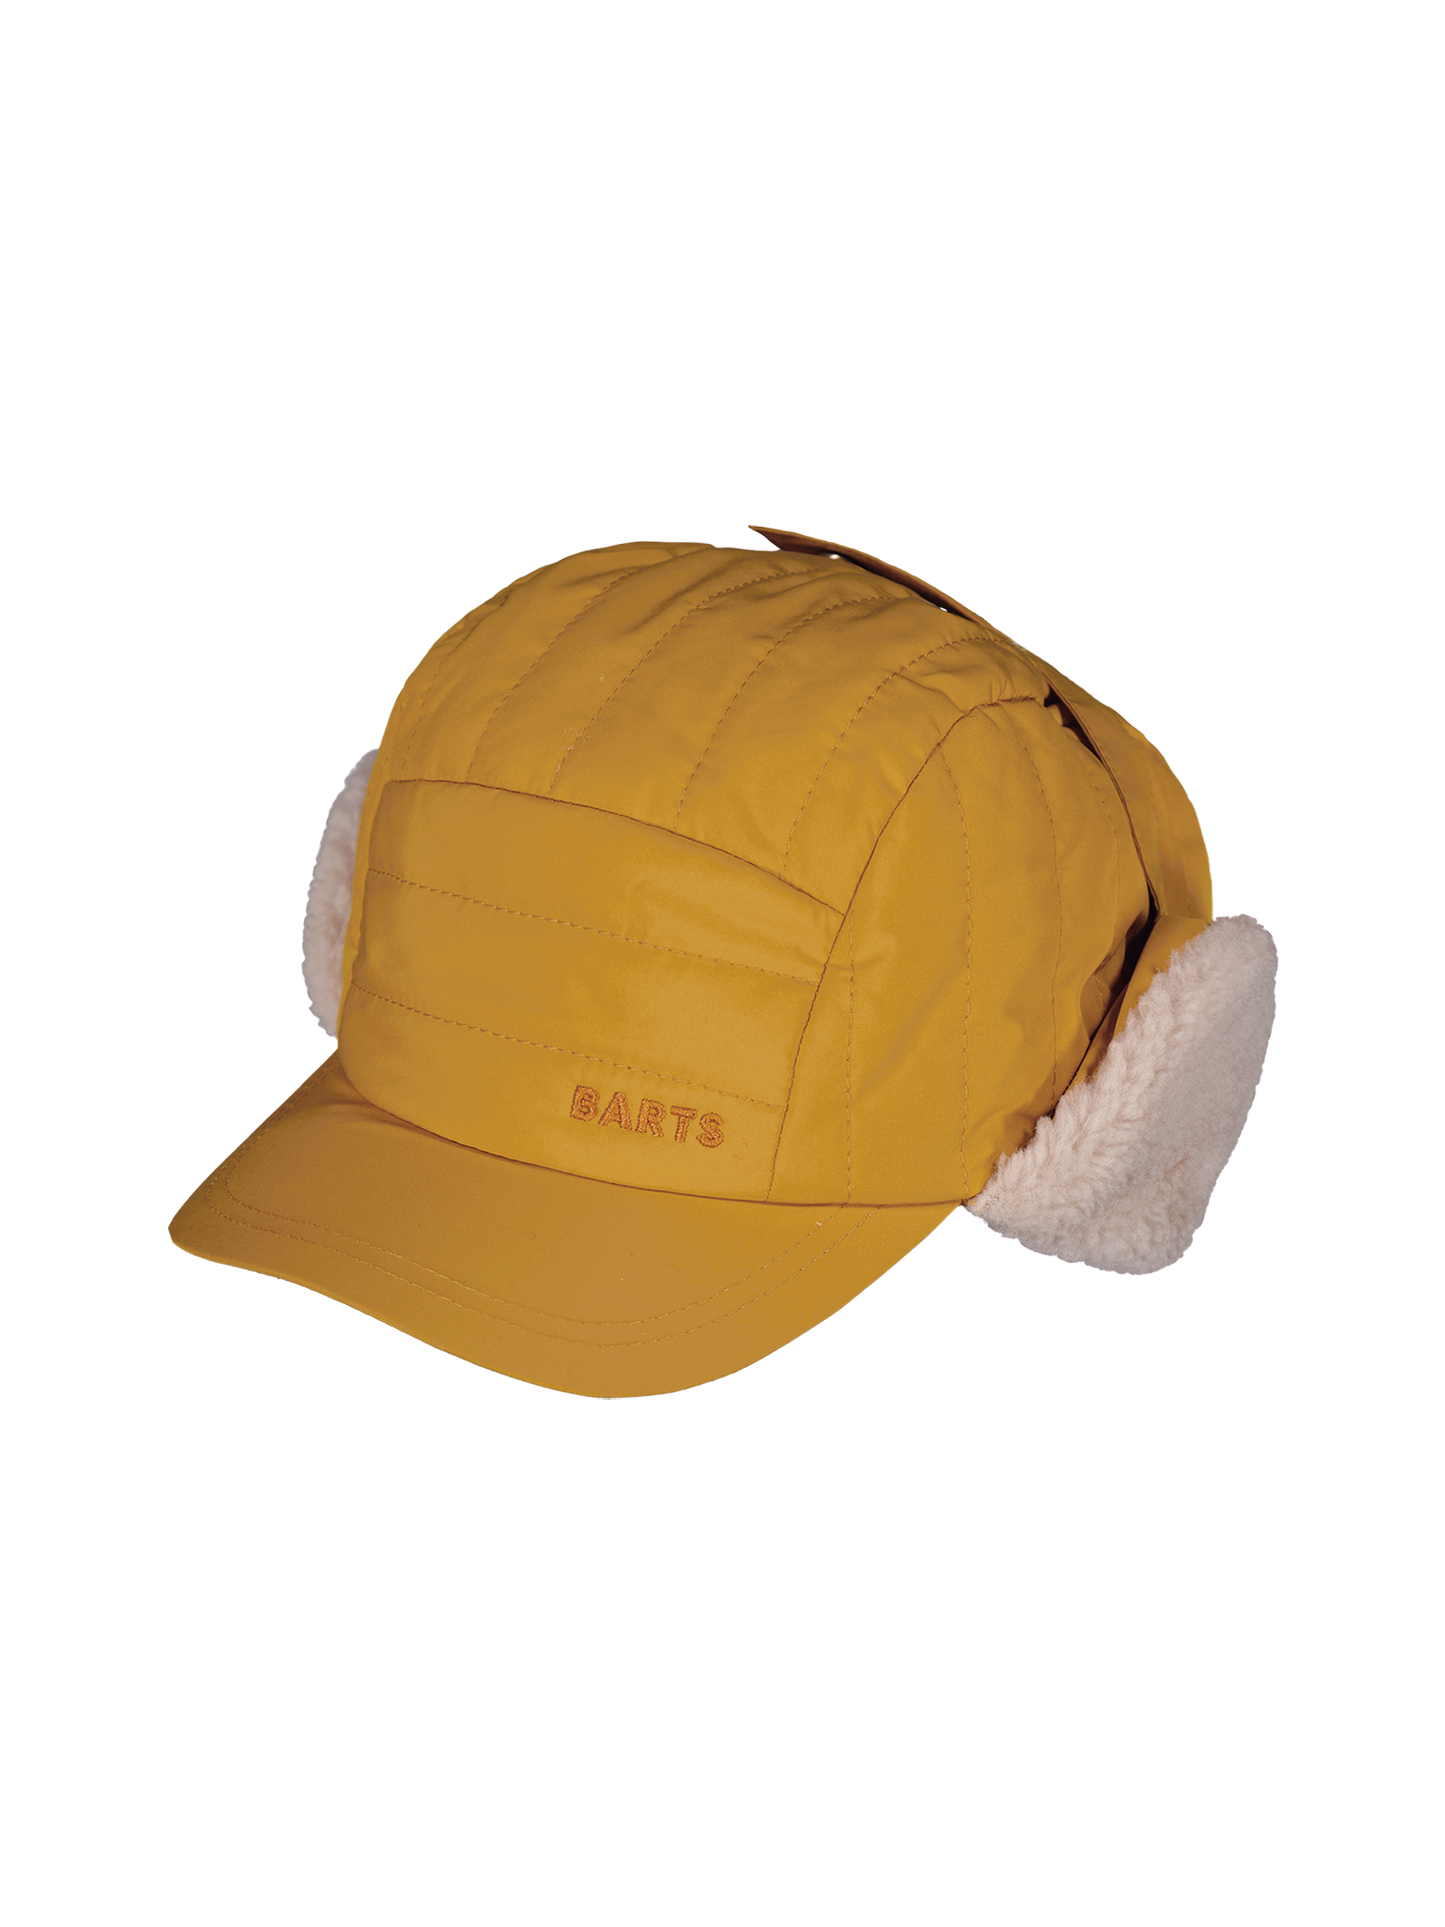 BARTS - kwinn cap - ochre - size53/55